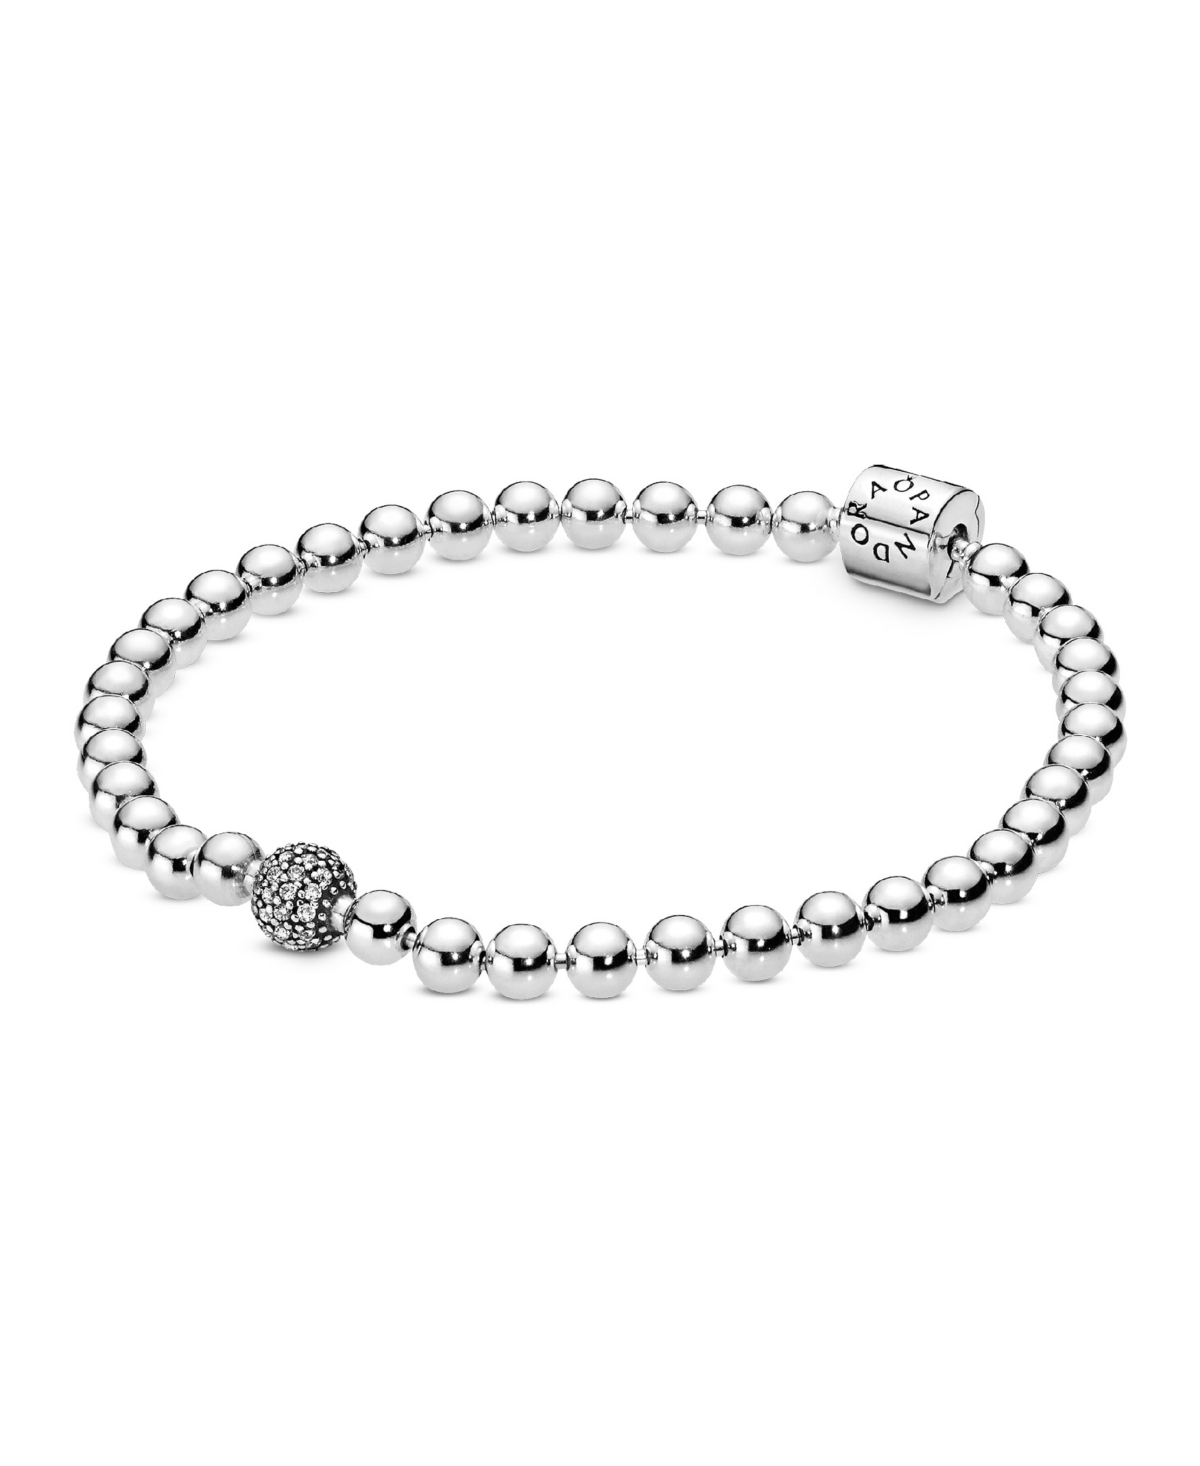 Sterling Silver Beads Pave Bracelet - Silver